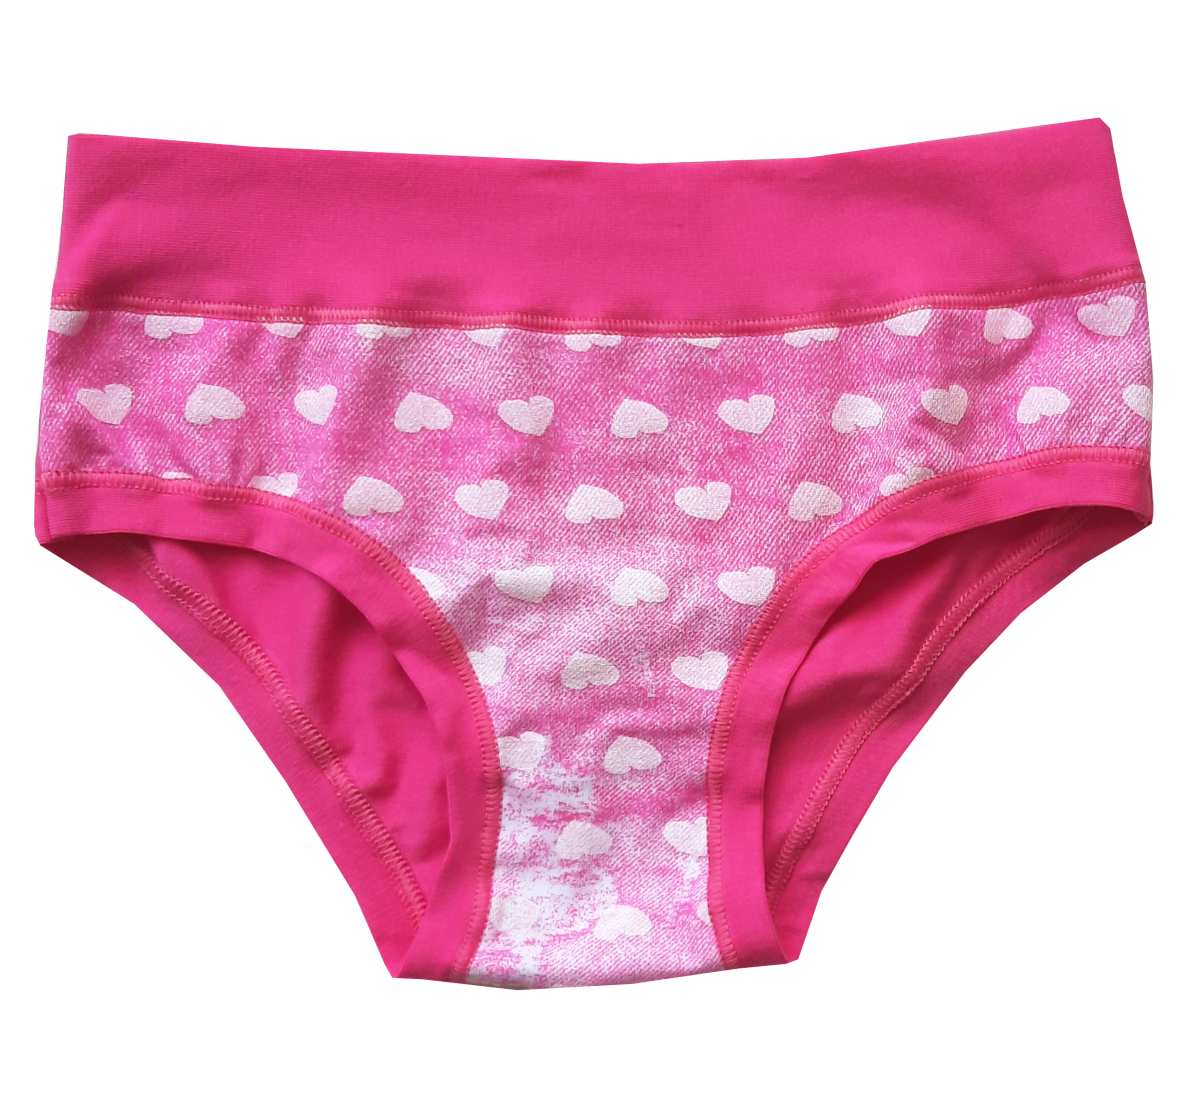 EMY Bimba 2281 dívčí kalhotky růžové Barva: fuxia, Velikost: 92